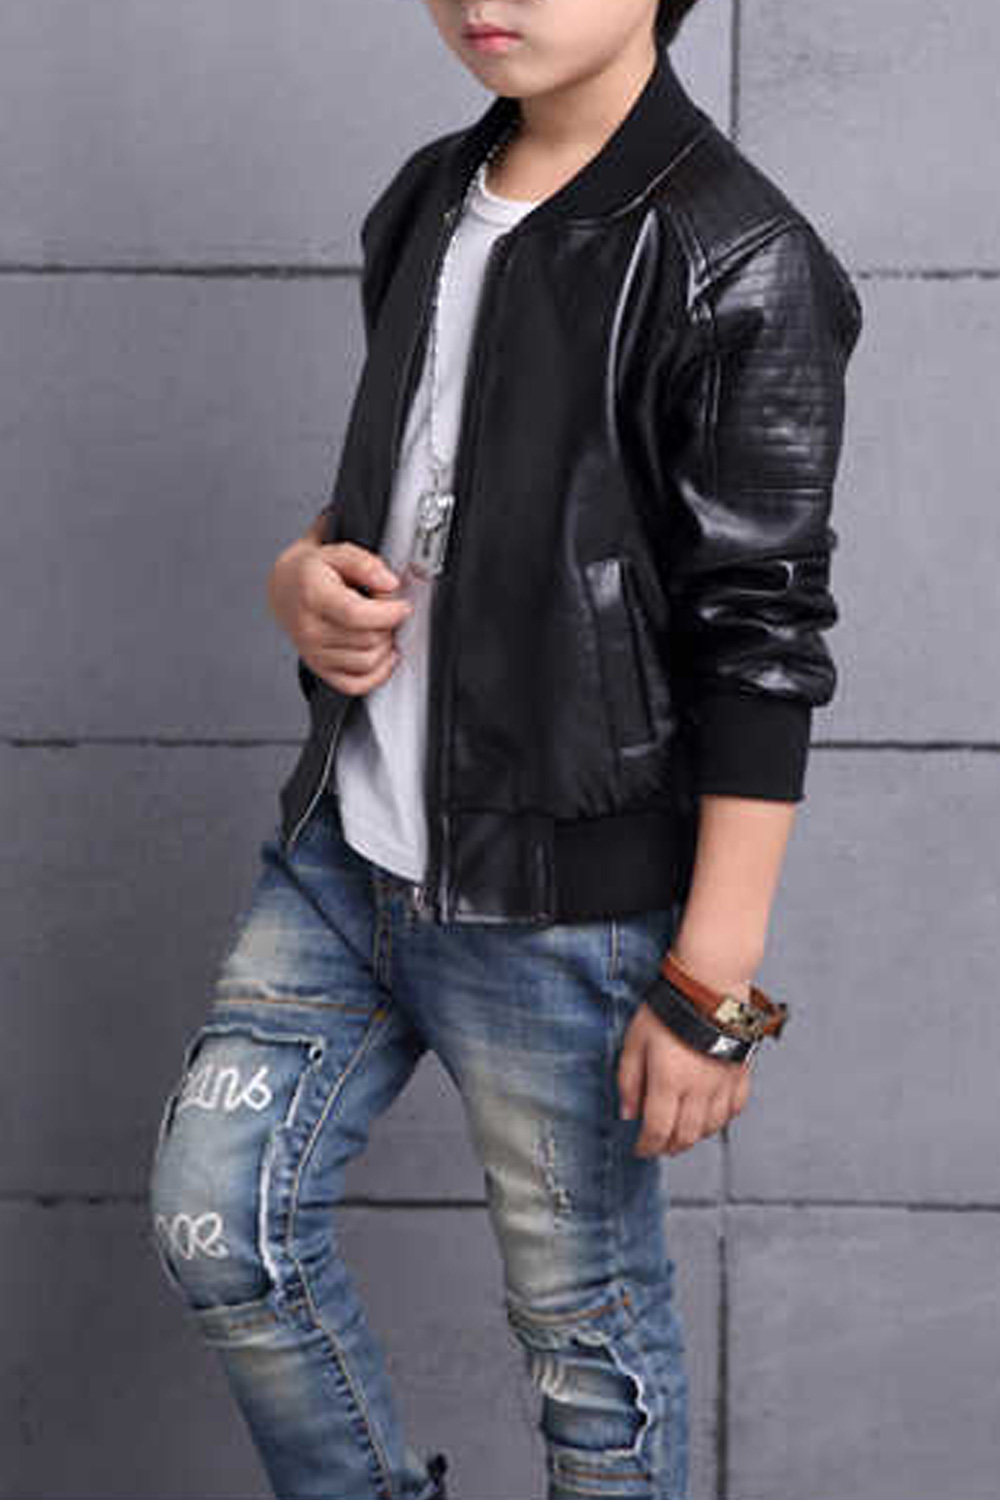 zara youth leather jacket